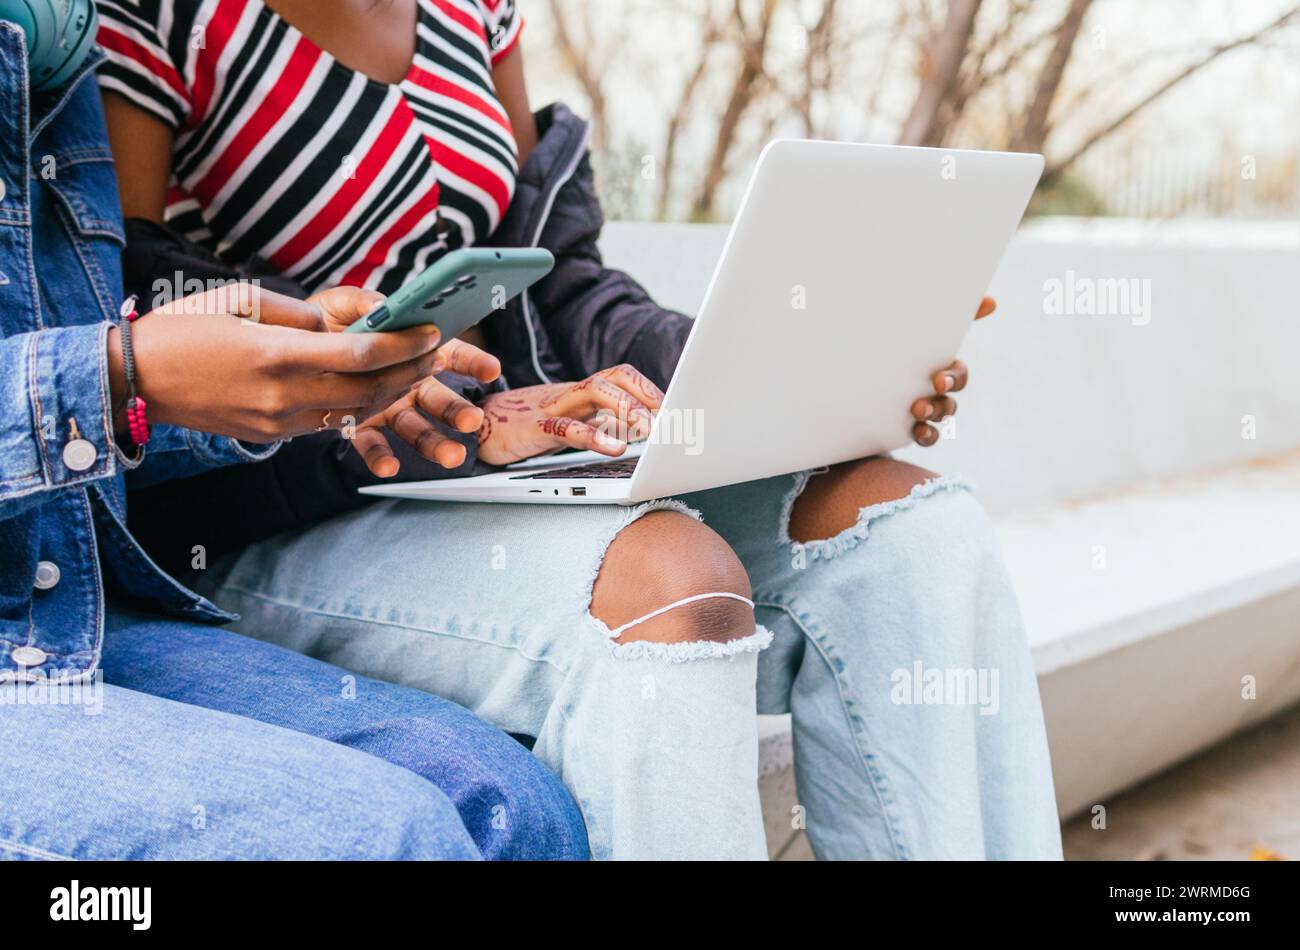 Ein fokussierter Blick auf zwei anonyme schwarze Schwestern, die sich mit Technologie beschäftigen und die Harmonie der digitalen Interaktion im Alltag demonstrieren Stockfoto